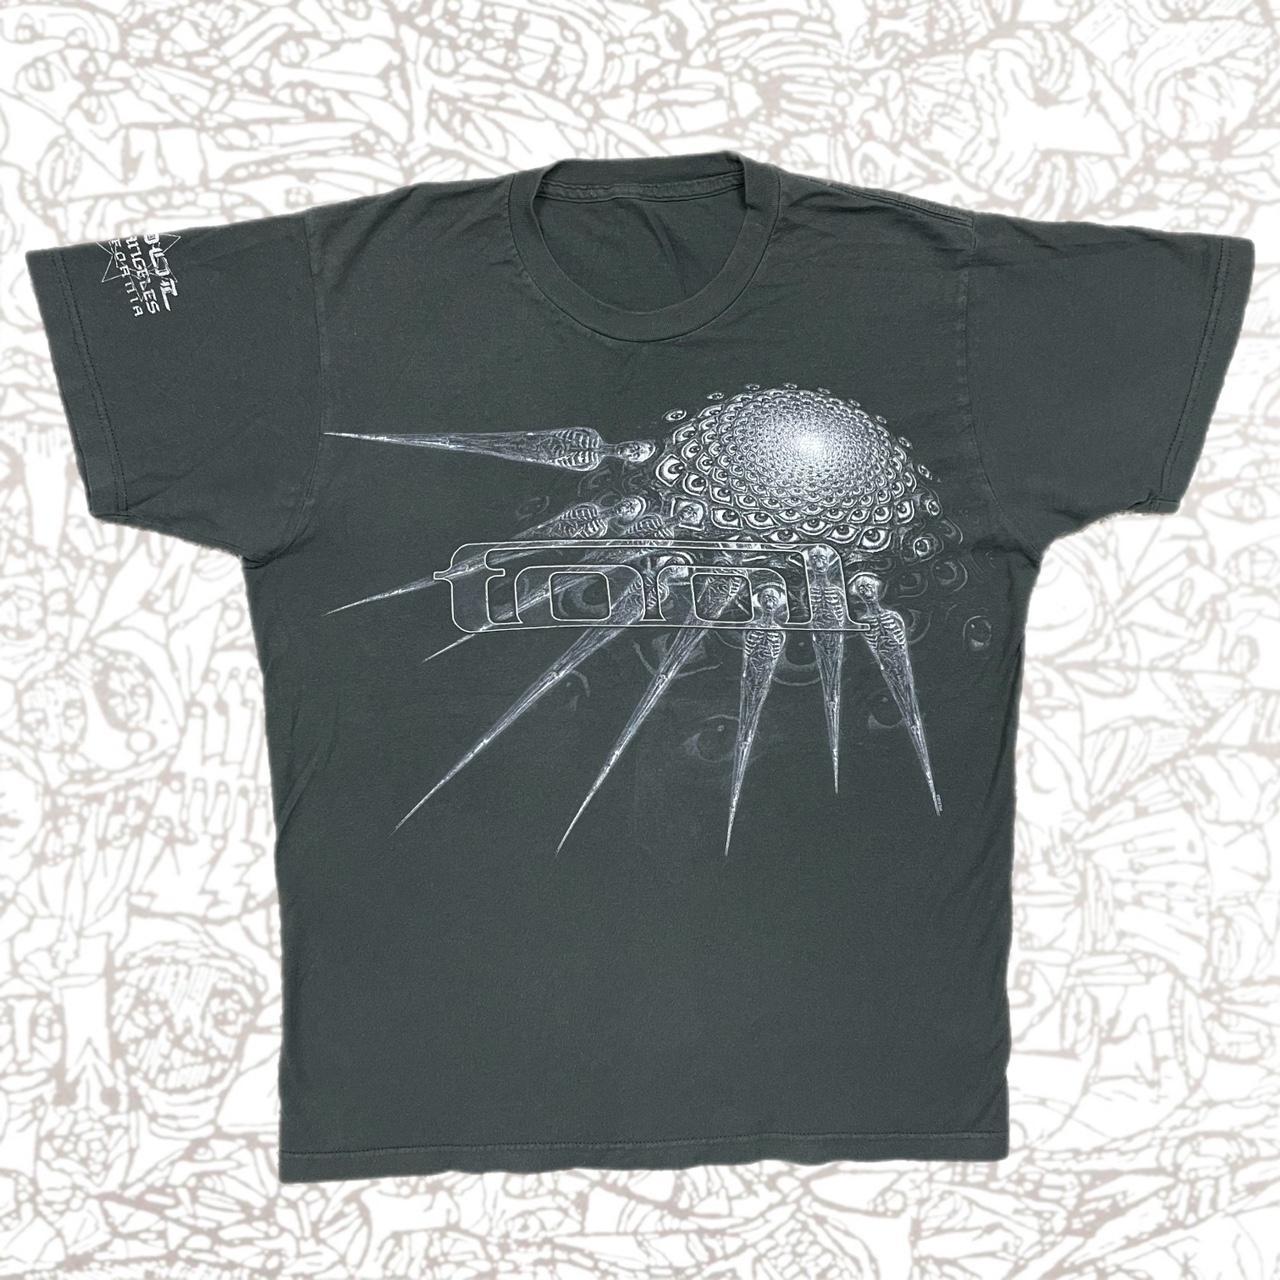 Tool Spectre Spikes Phurba Shirt — Alex Grey Metal... - Depop